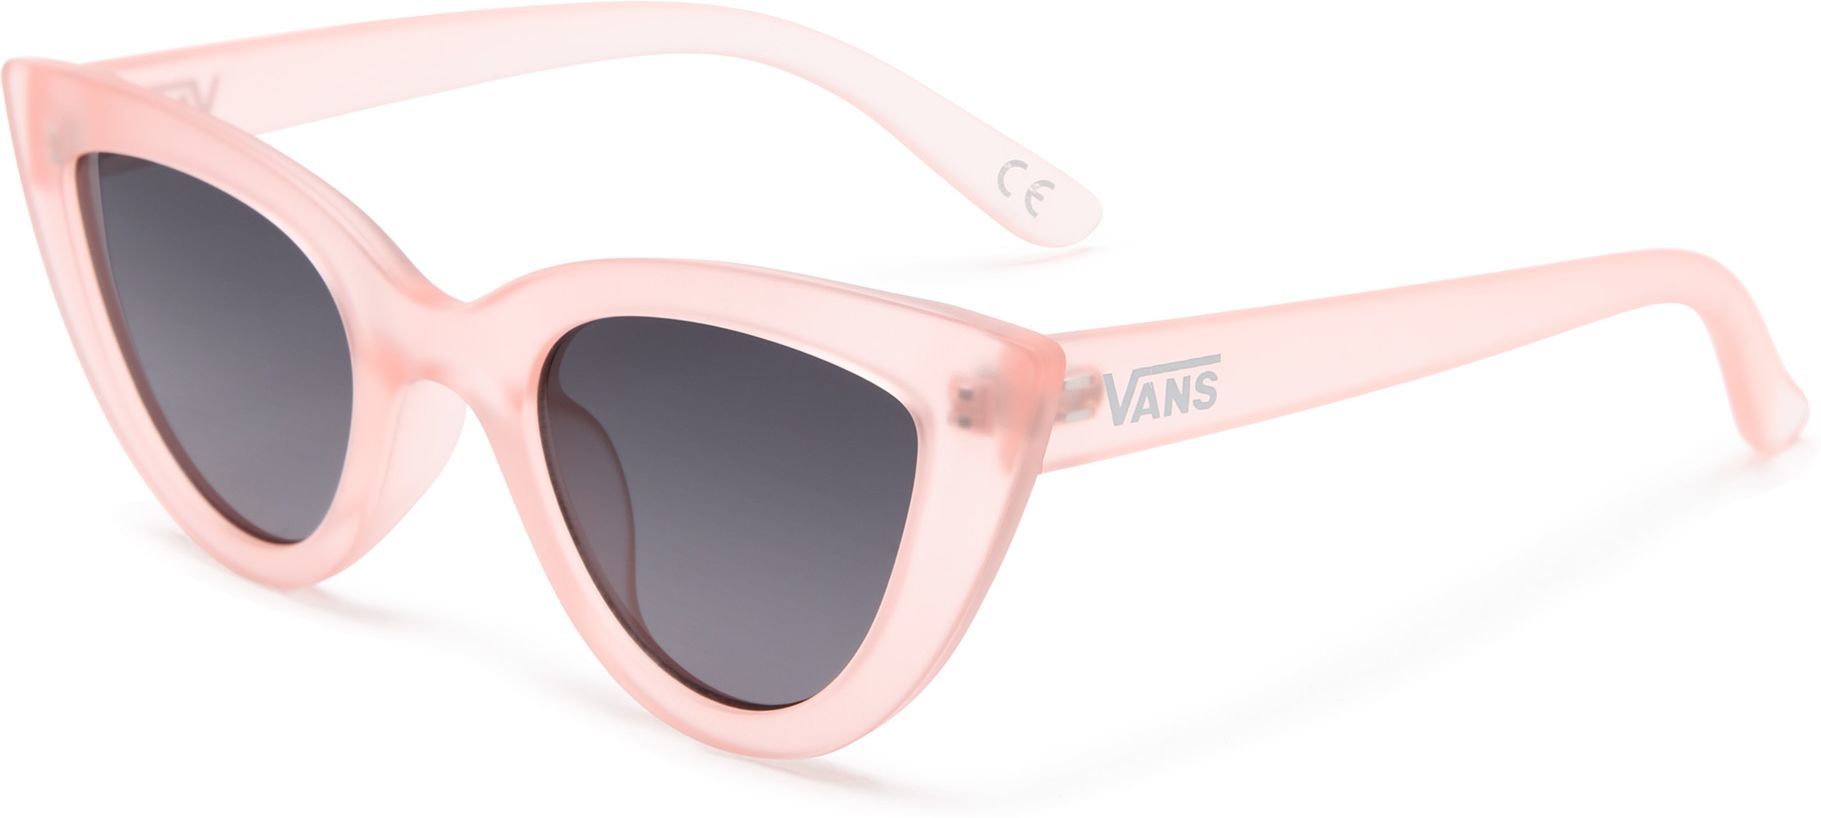 okulary przeciwsłoneczne VANS RETRO CAT SUNGLASSES Powder Pink